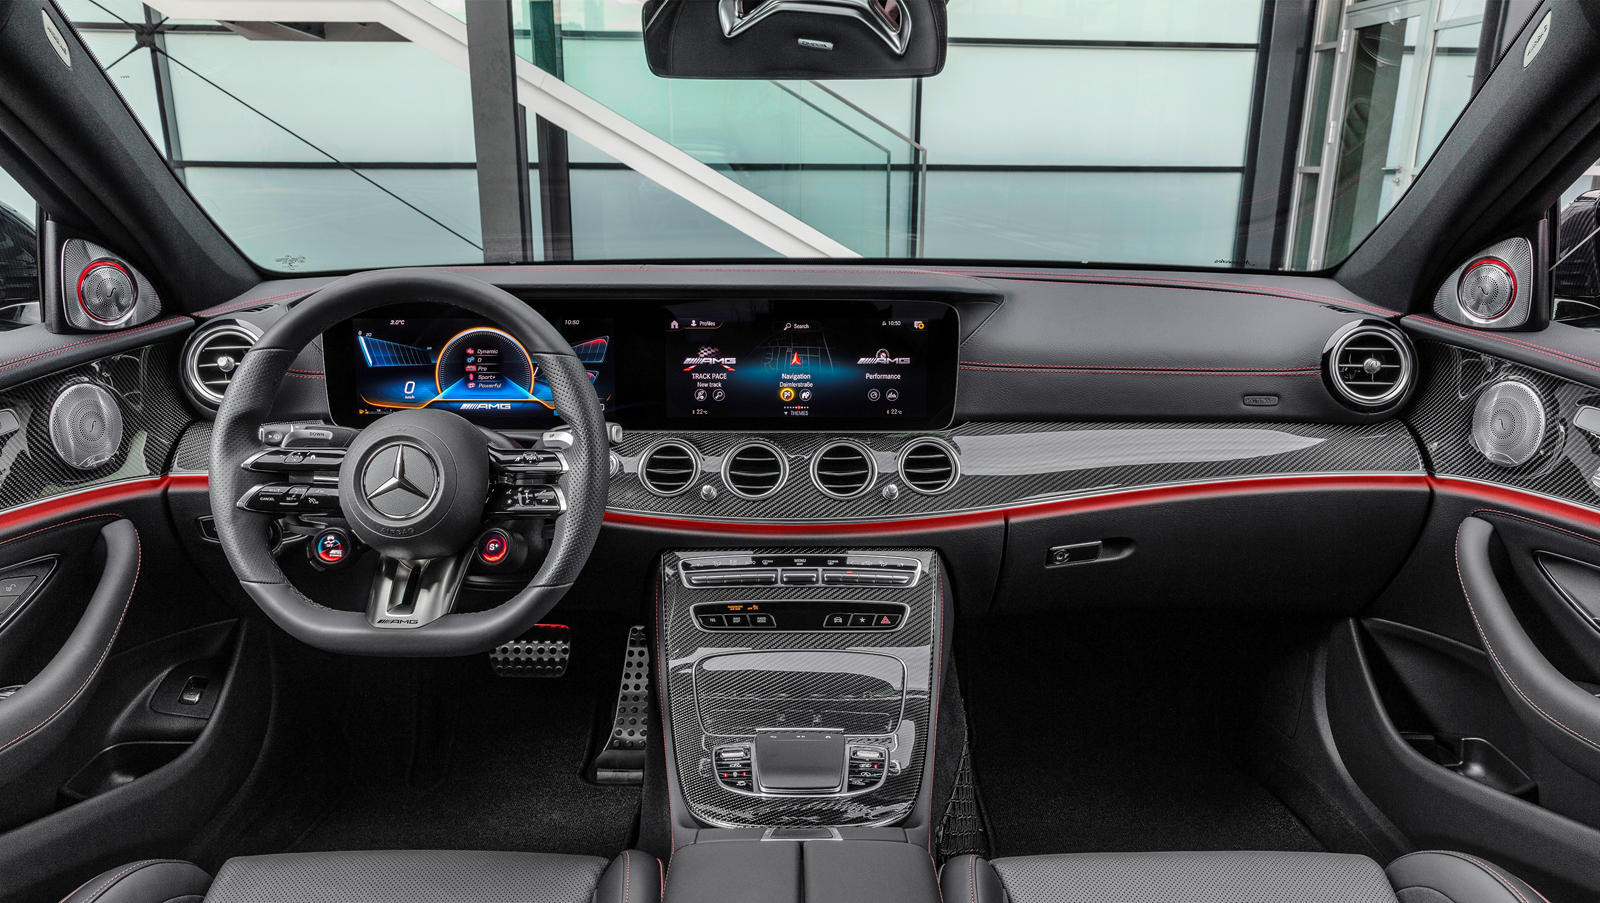 2022 Mercedes-AMG E53 Sedan Interior Dimensions: Seating, Cargo Space &  Trunk Size - Photos | CarBuzz